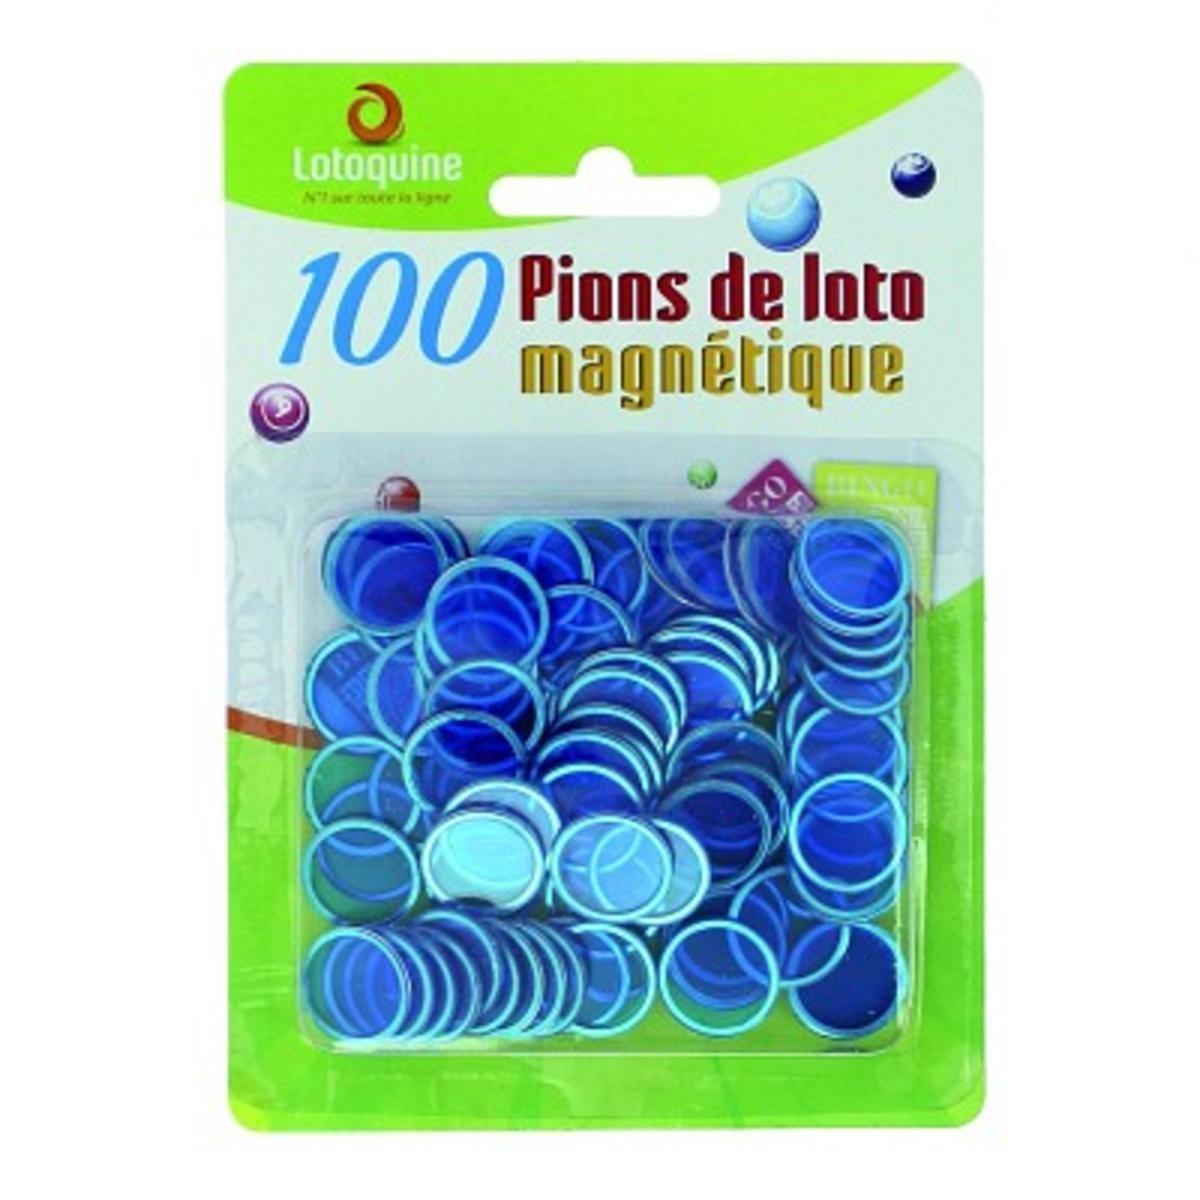 Ramasse jeton bleu avec ces pions aimantés pour jeu Bingo et loto